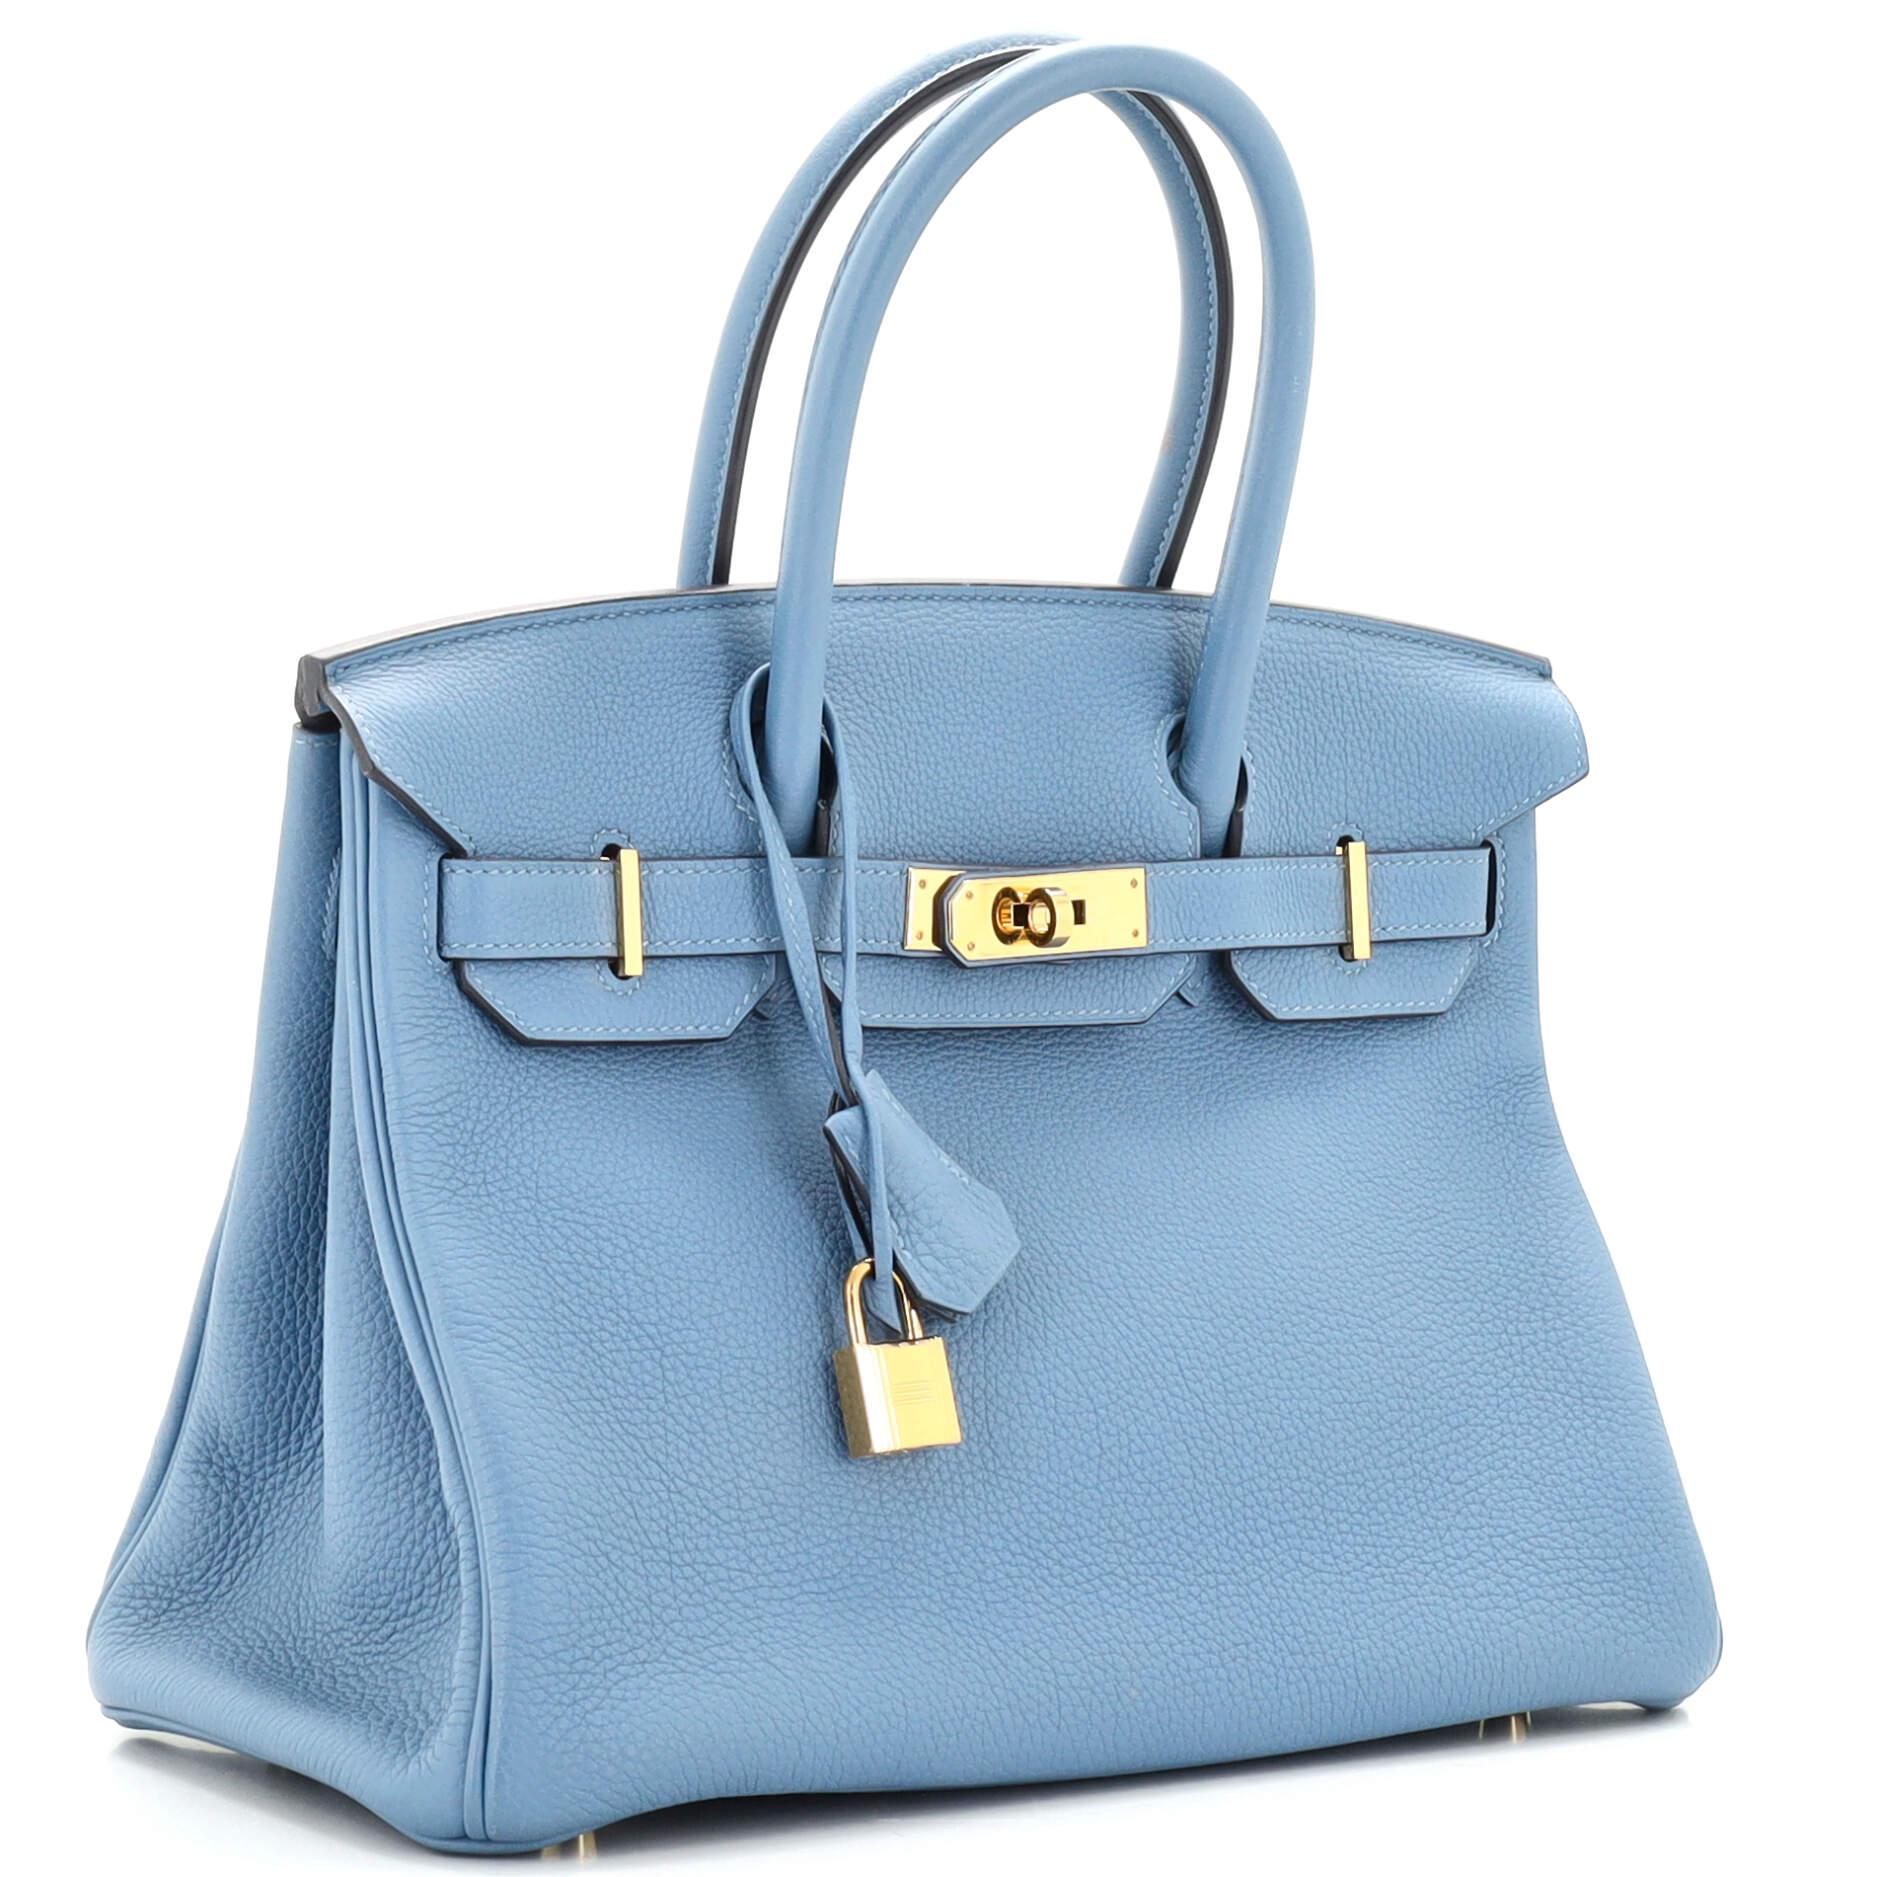 Blue Hermes Birkin Handbag Bleu Azur Togo with Gold Hardware 30